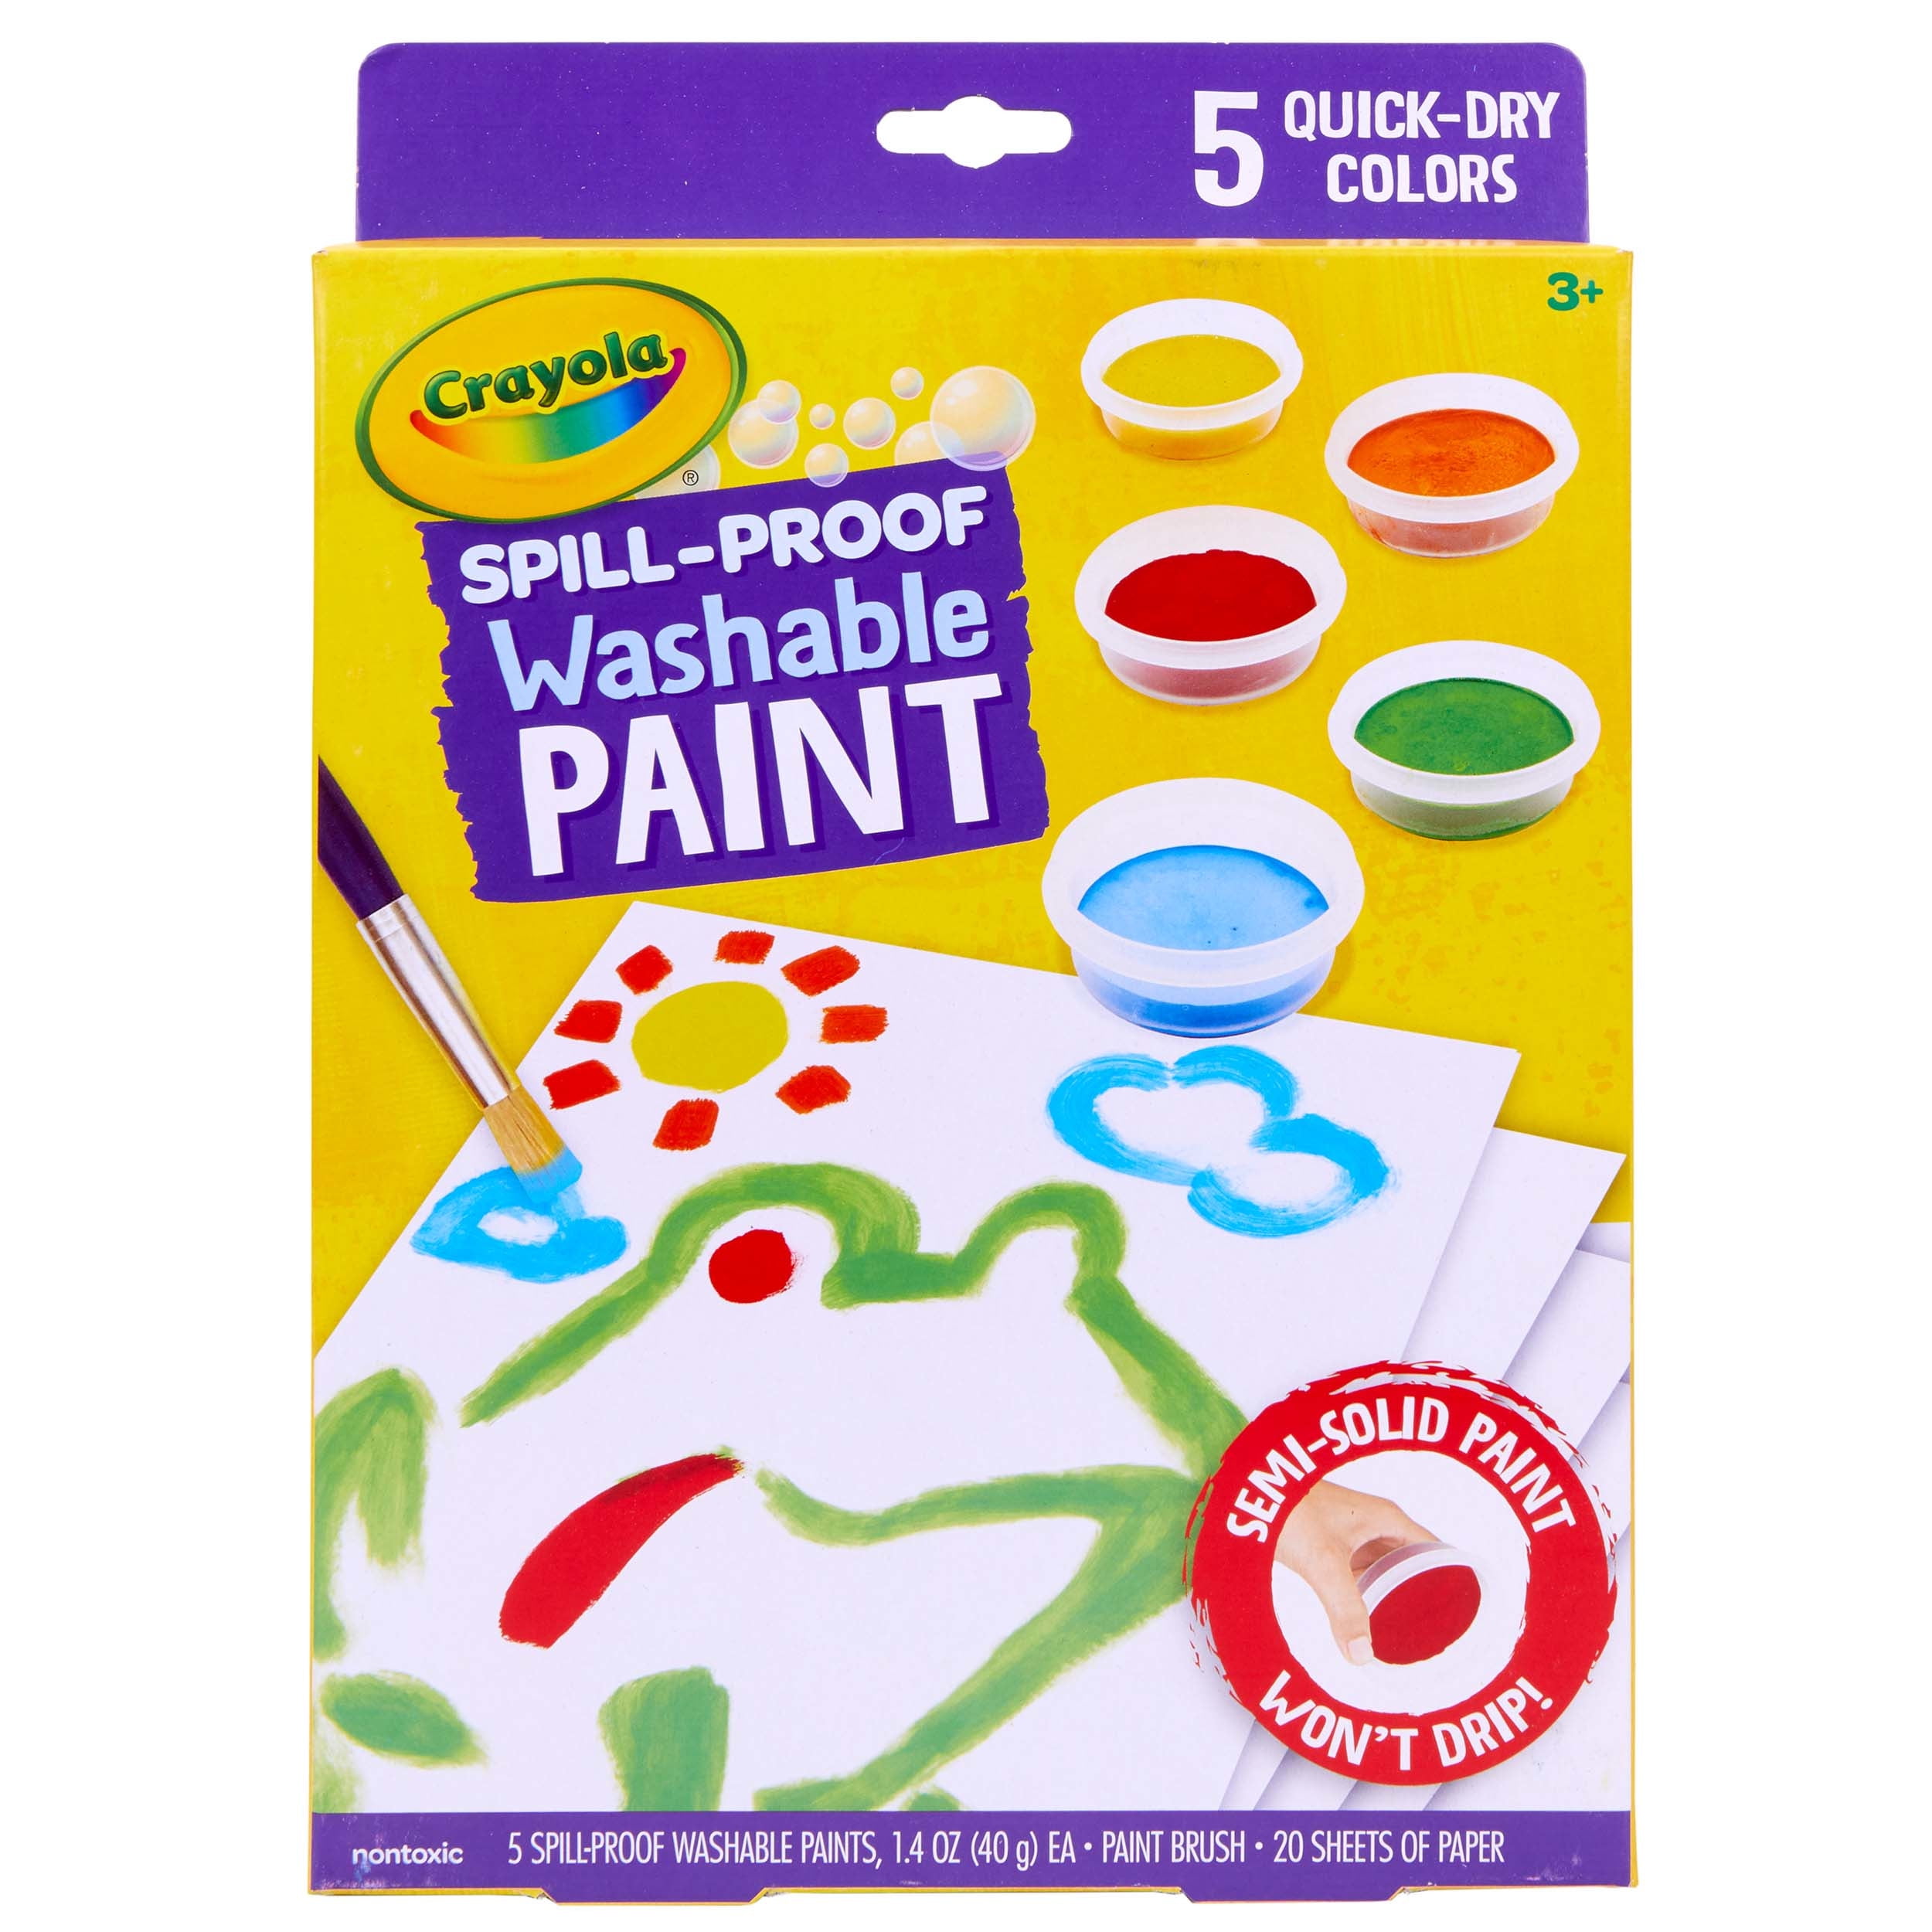 46 Pack Acrylic Paint Set, Shuttle Art 30 Colors Acrylic Paint with 10  Paint Brushes 3 Painting Canvas 1 Paint Knife Palette Sponge, Gift Set for